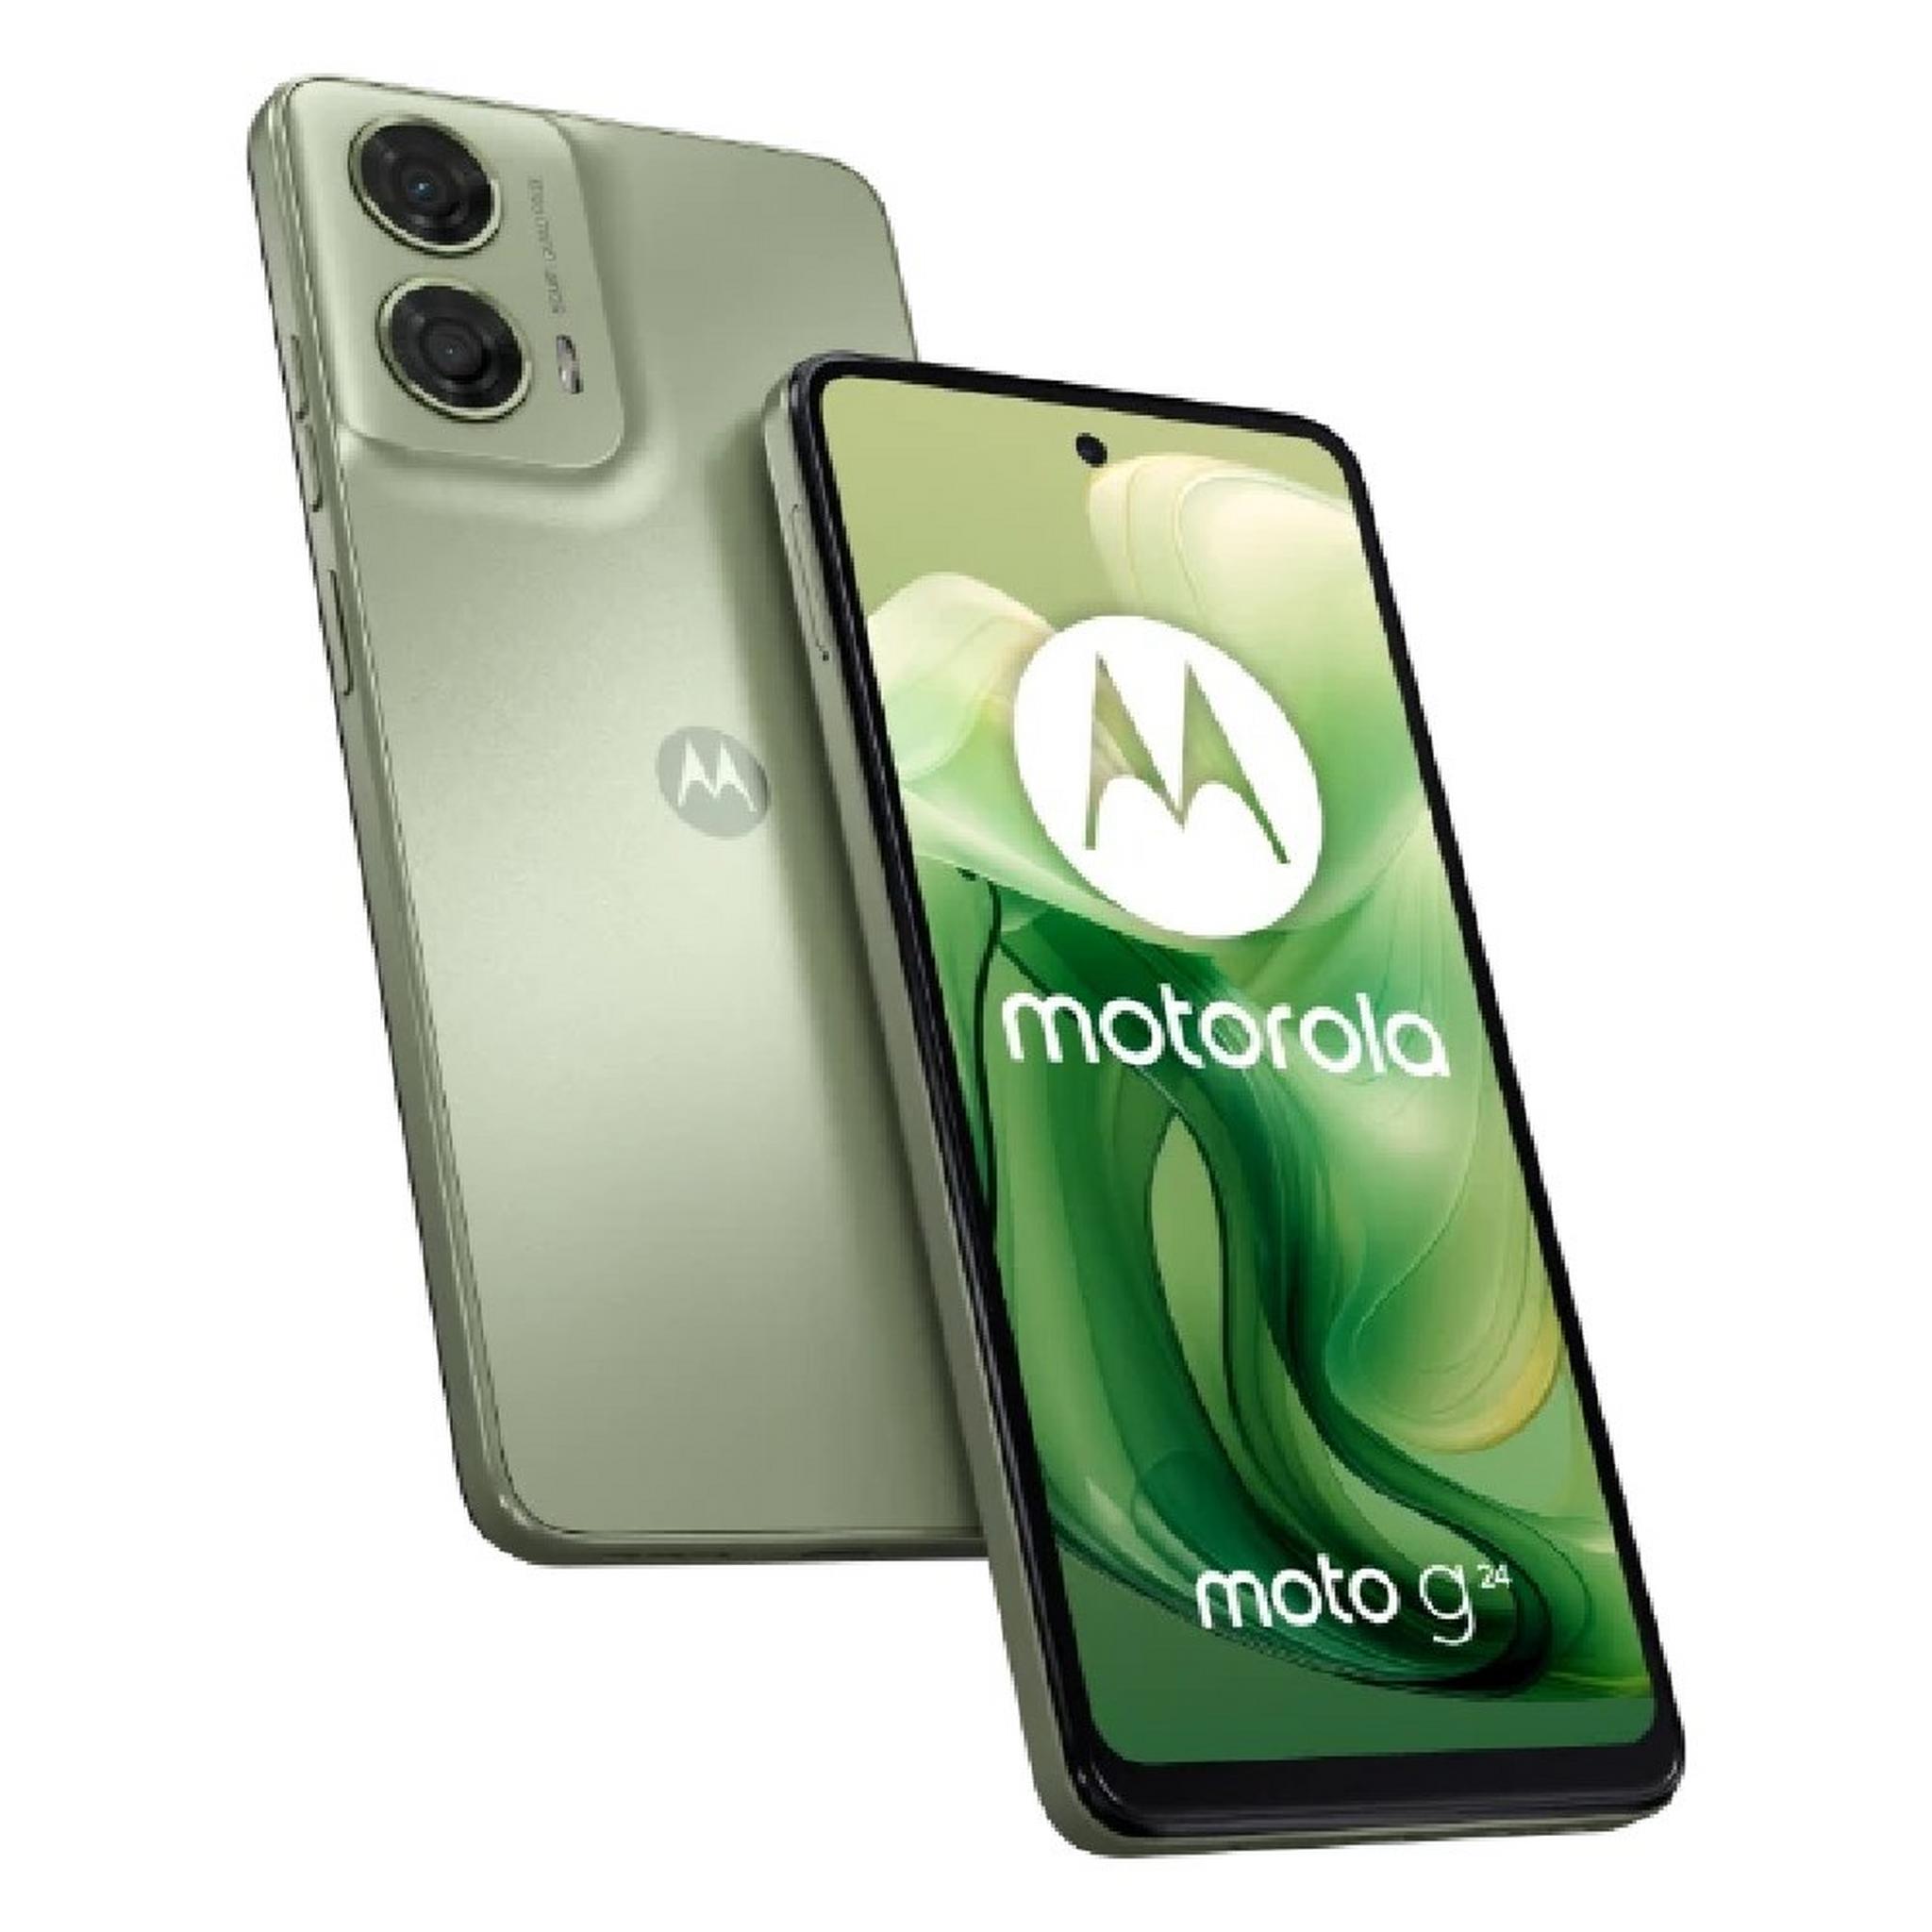 هاتف موتو جي24 من موتورولا، شاشة 6.56 بوصة، 8 جيجابايت رام، 128 جيجابايت – أخضر